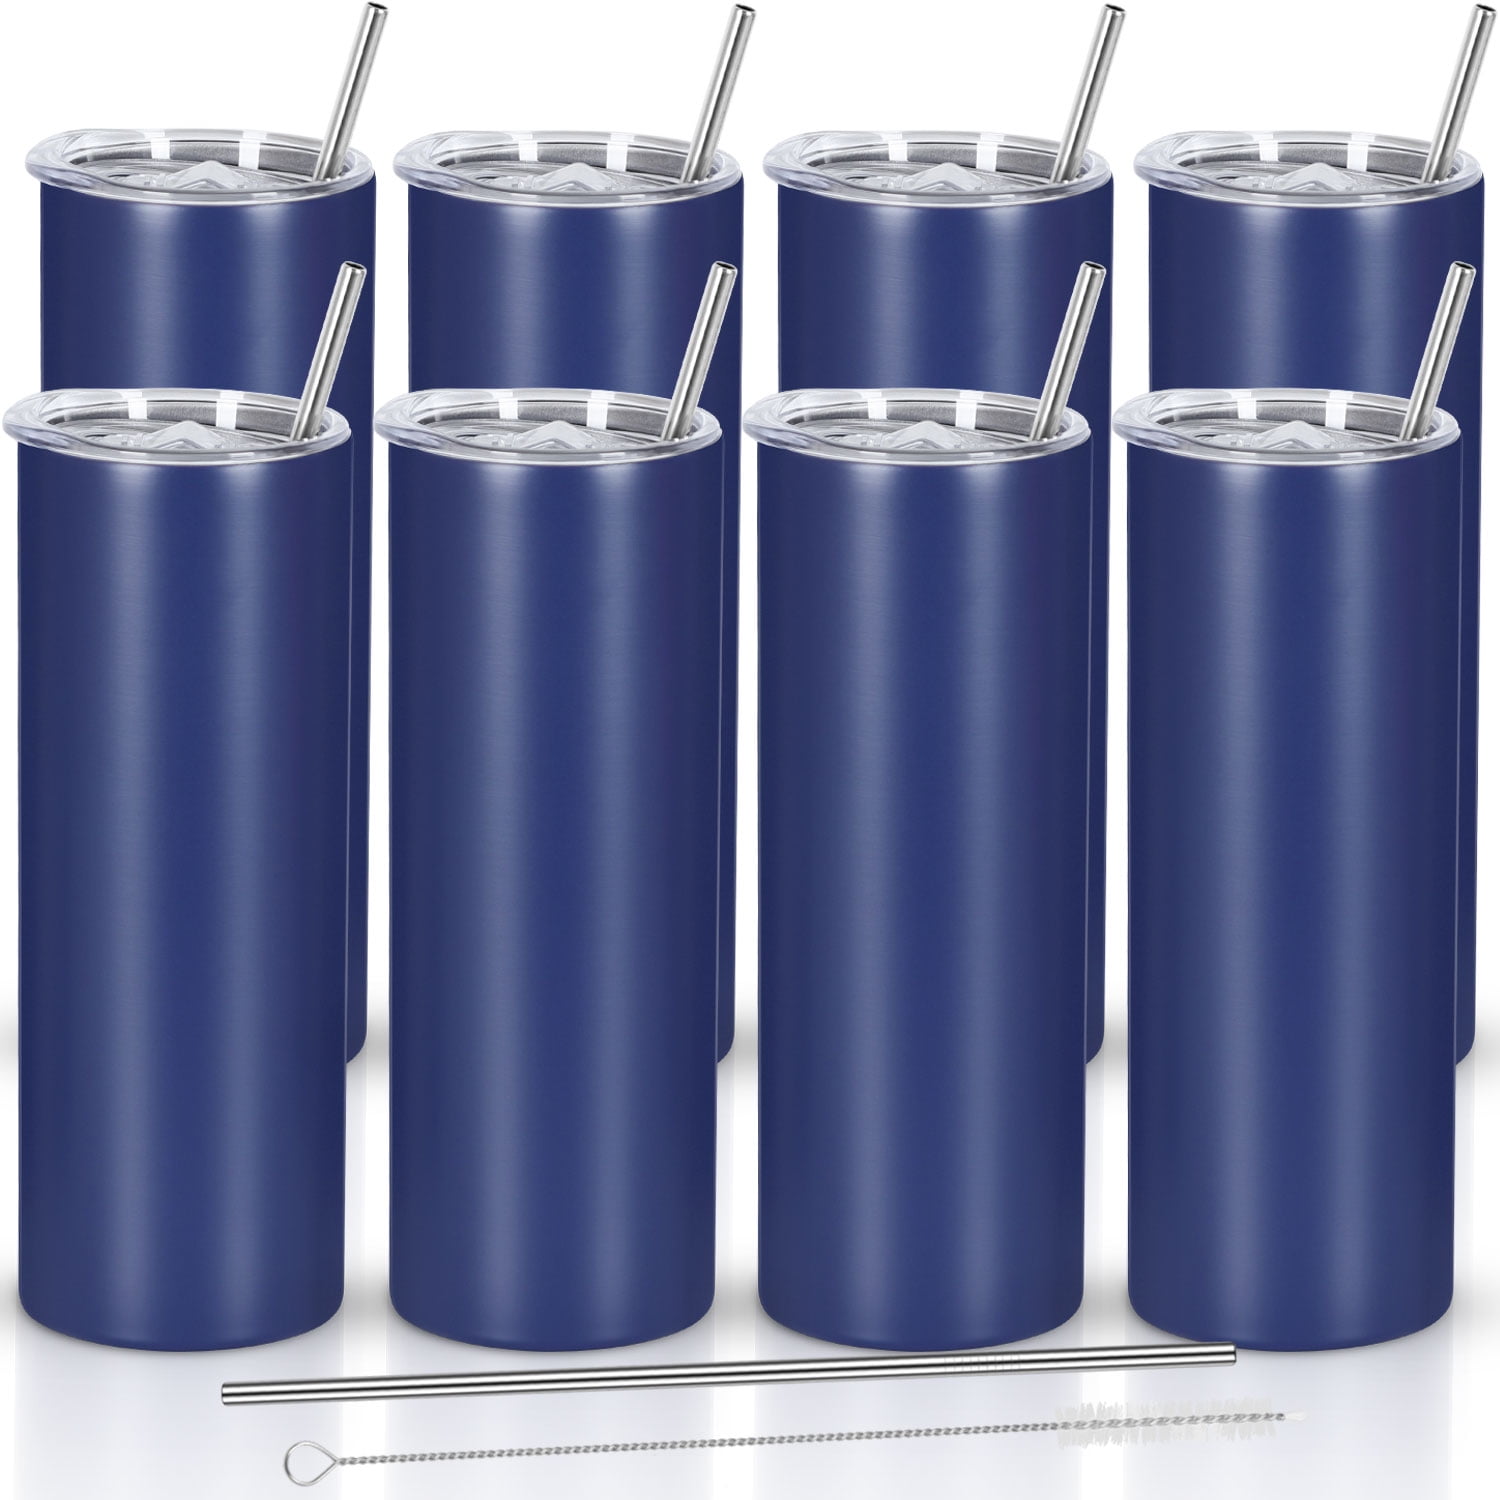 BrüMate Hopsulator Slim | Insulated Cooler Beverage Sleeve for Travel | Aqua | 12oz Slim Cans